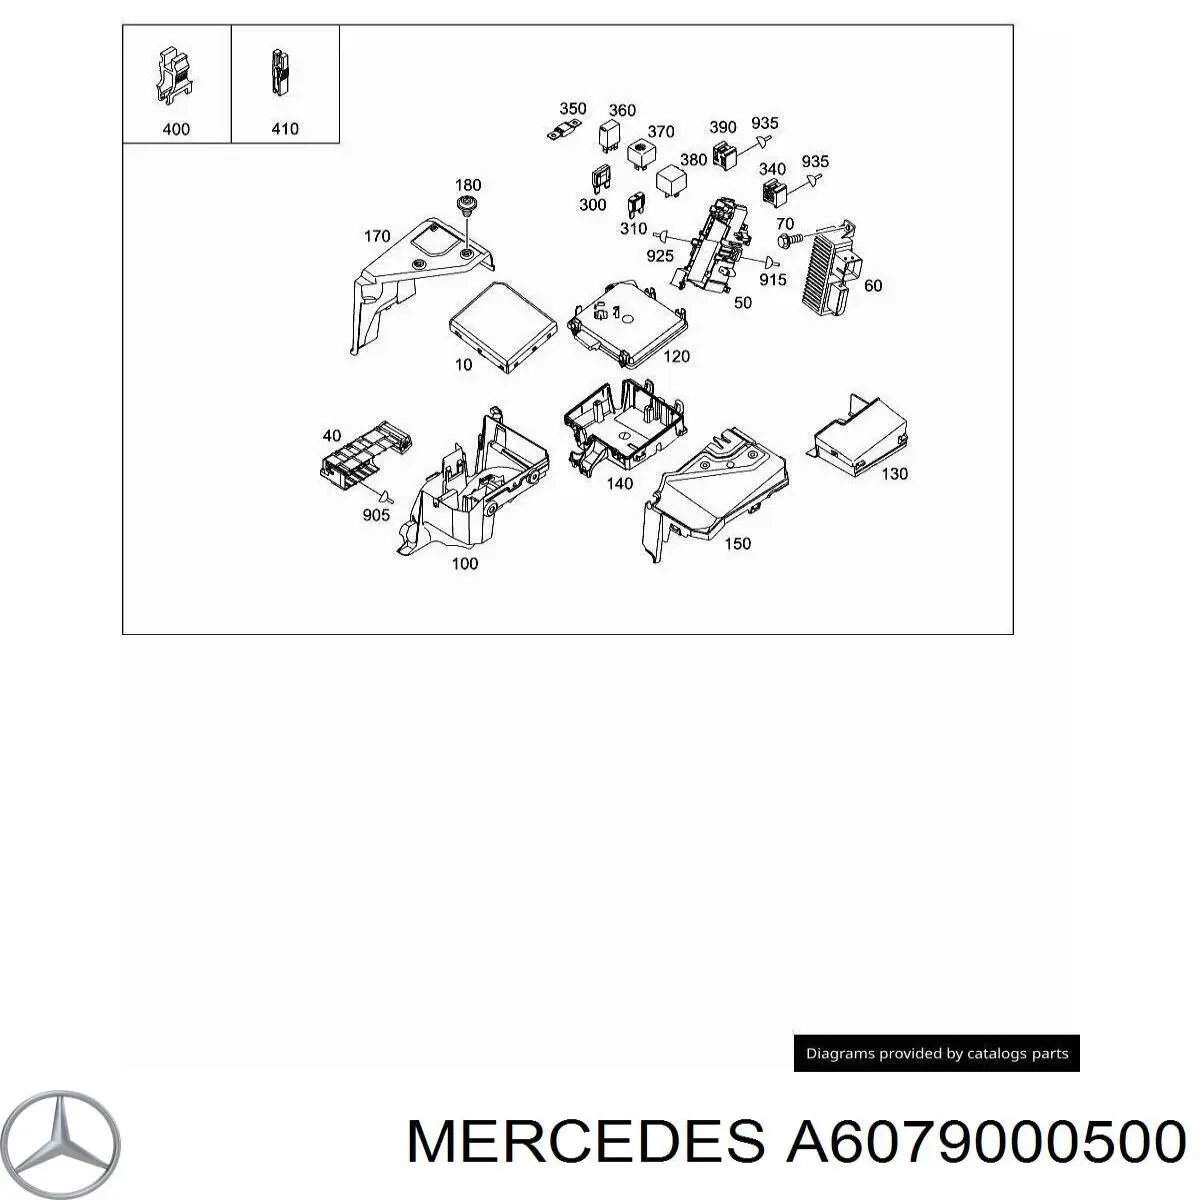 A6079000500 Mercedes relé de precalentamiento